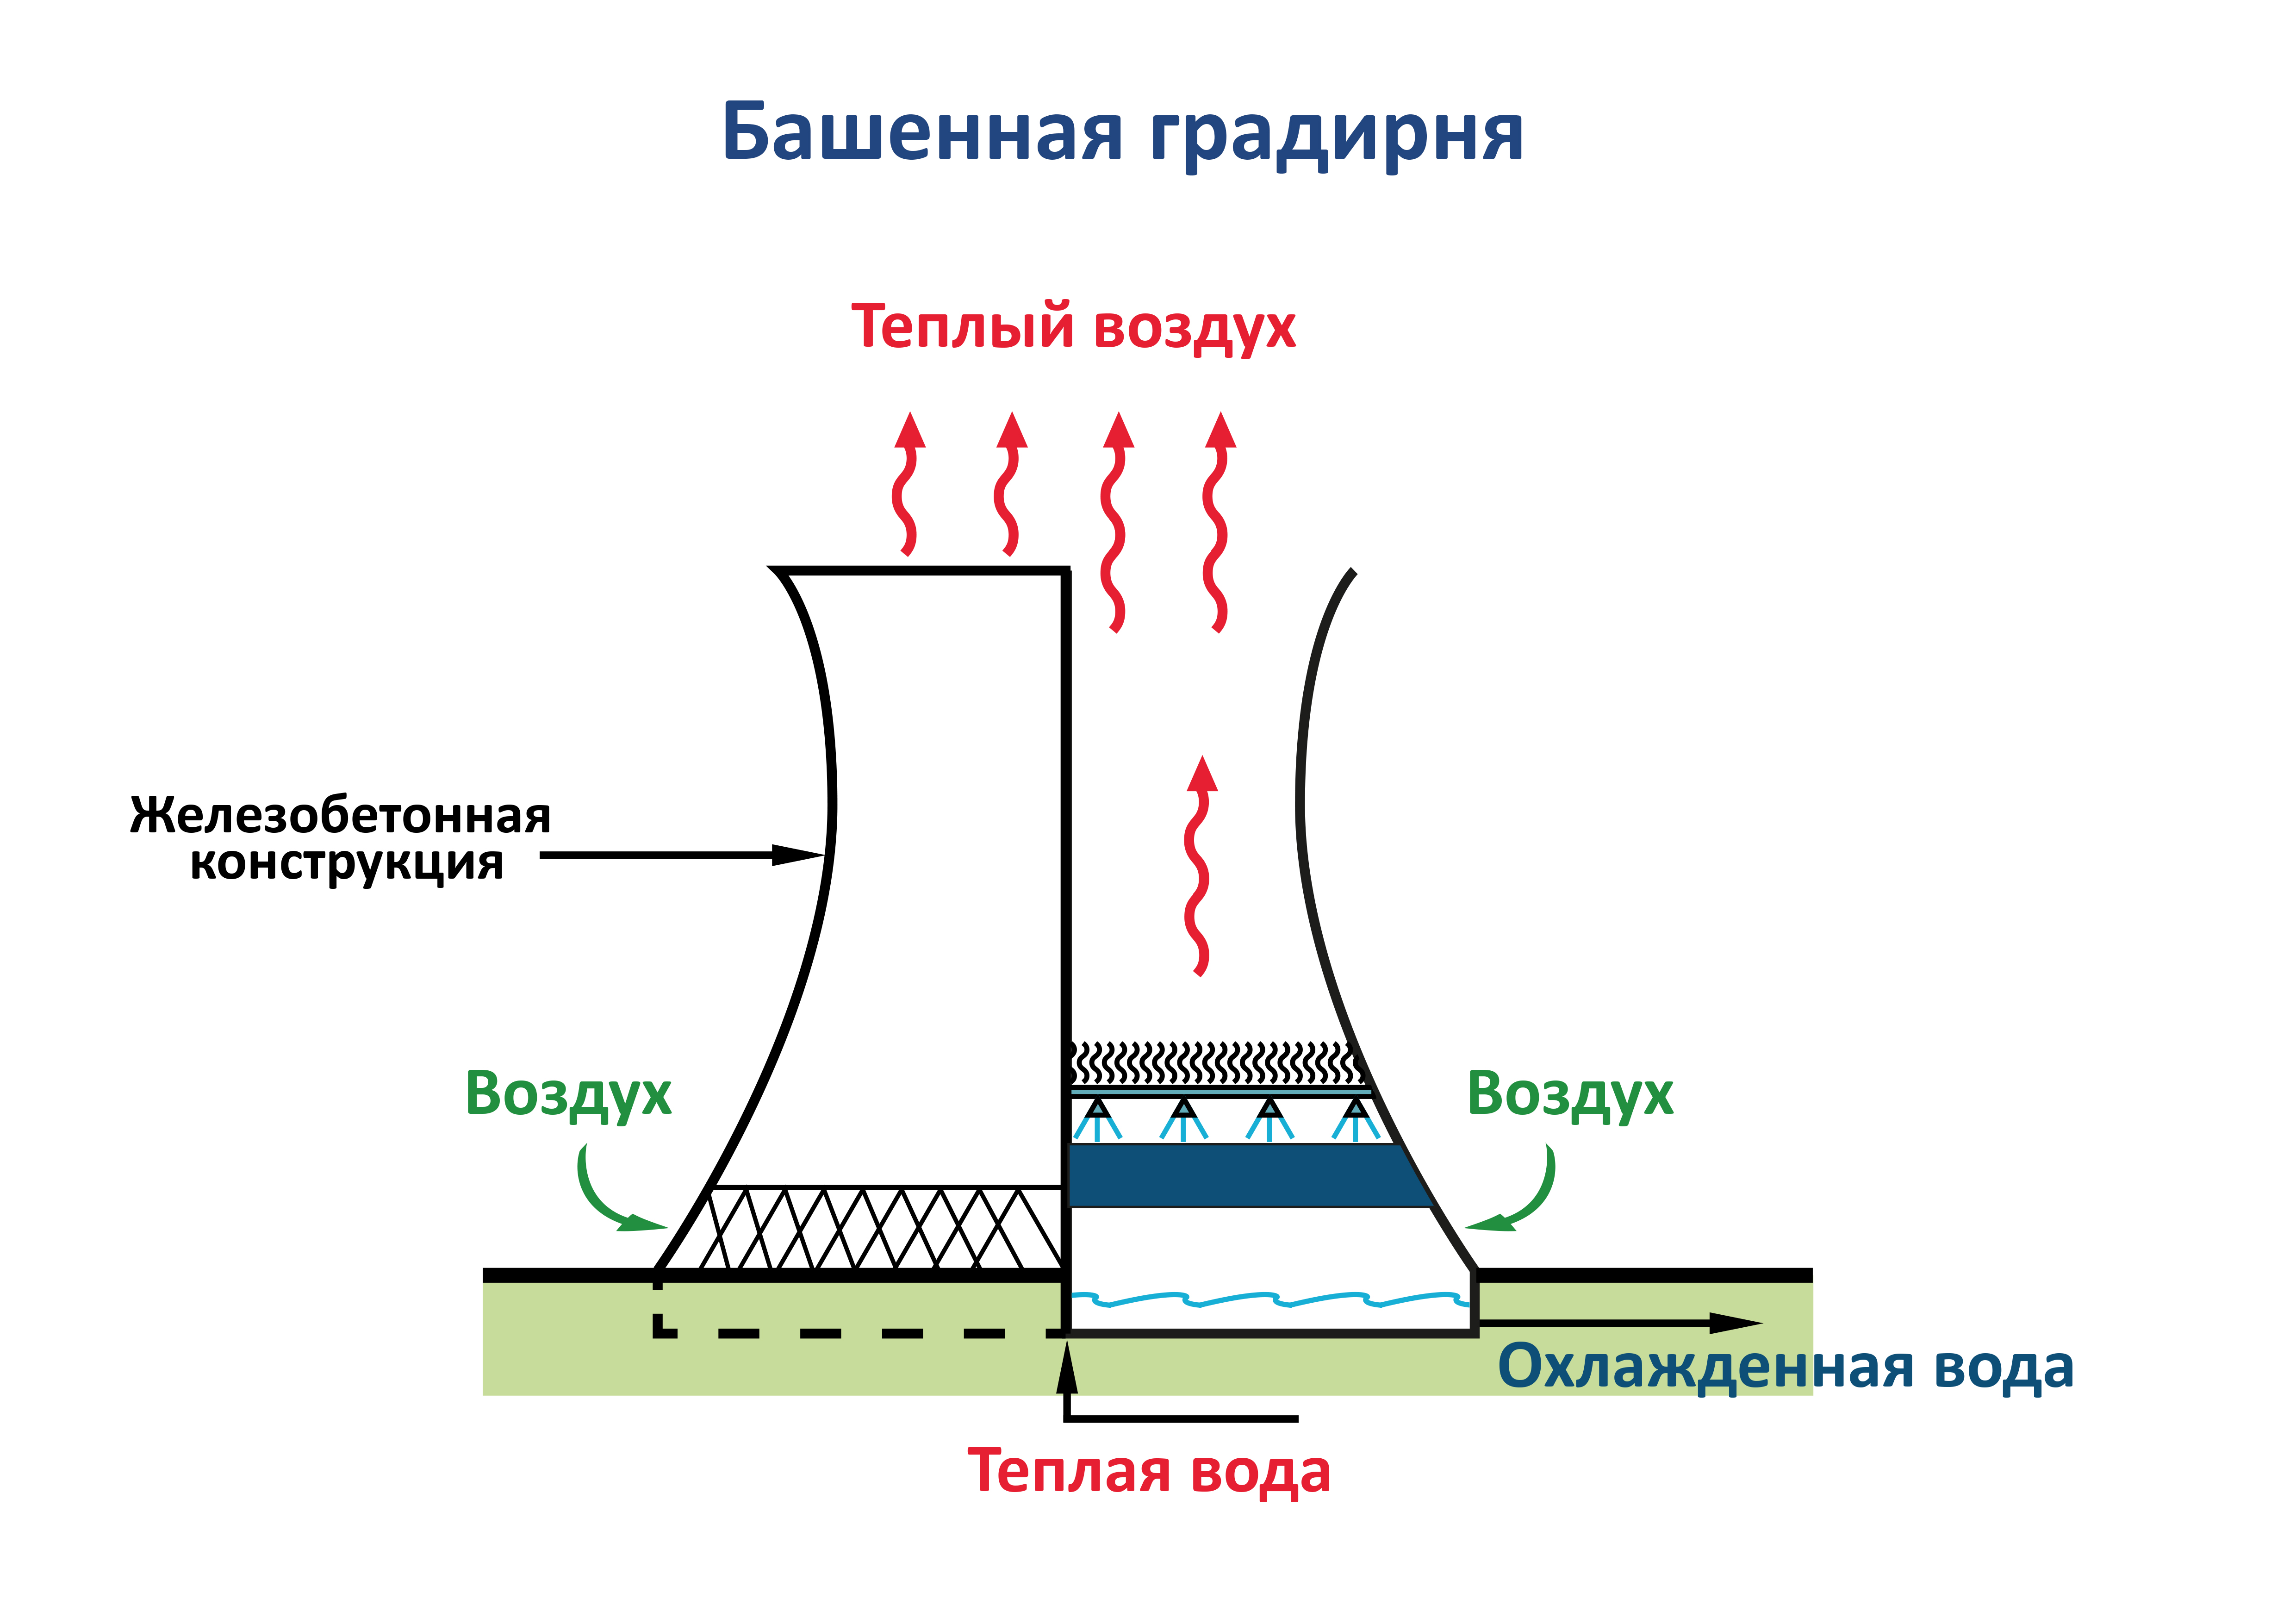 Схема градирни для охлаждения воды